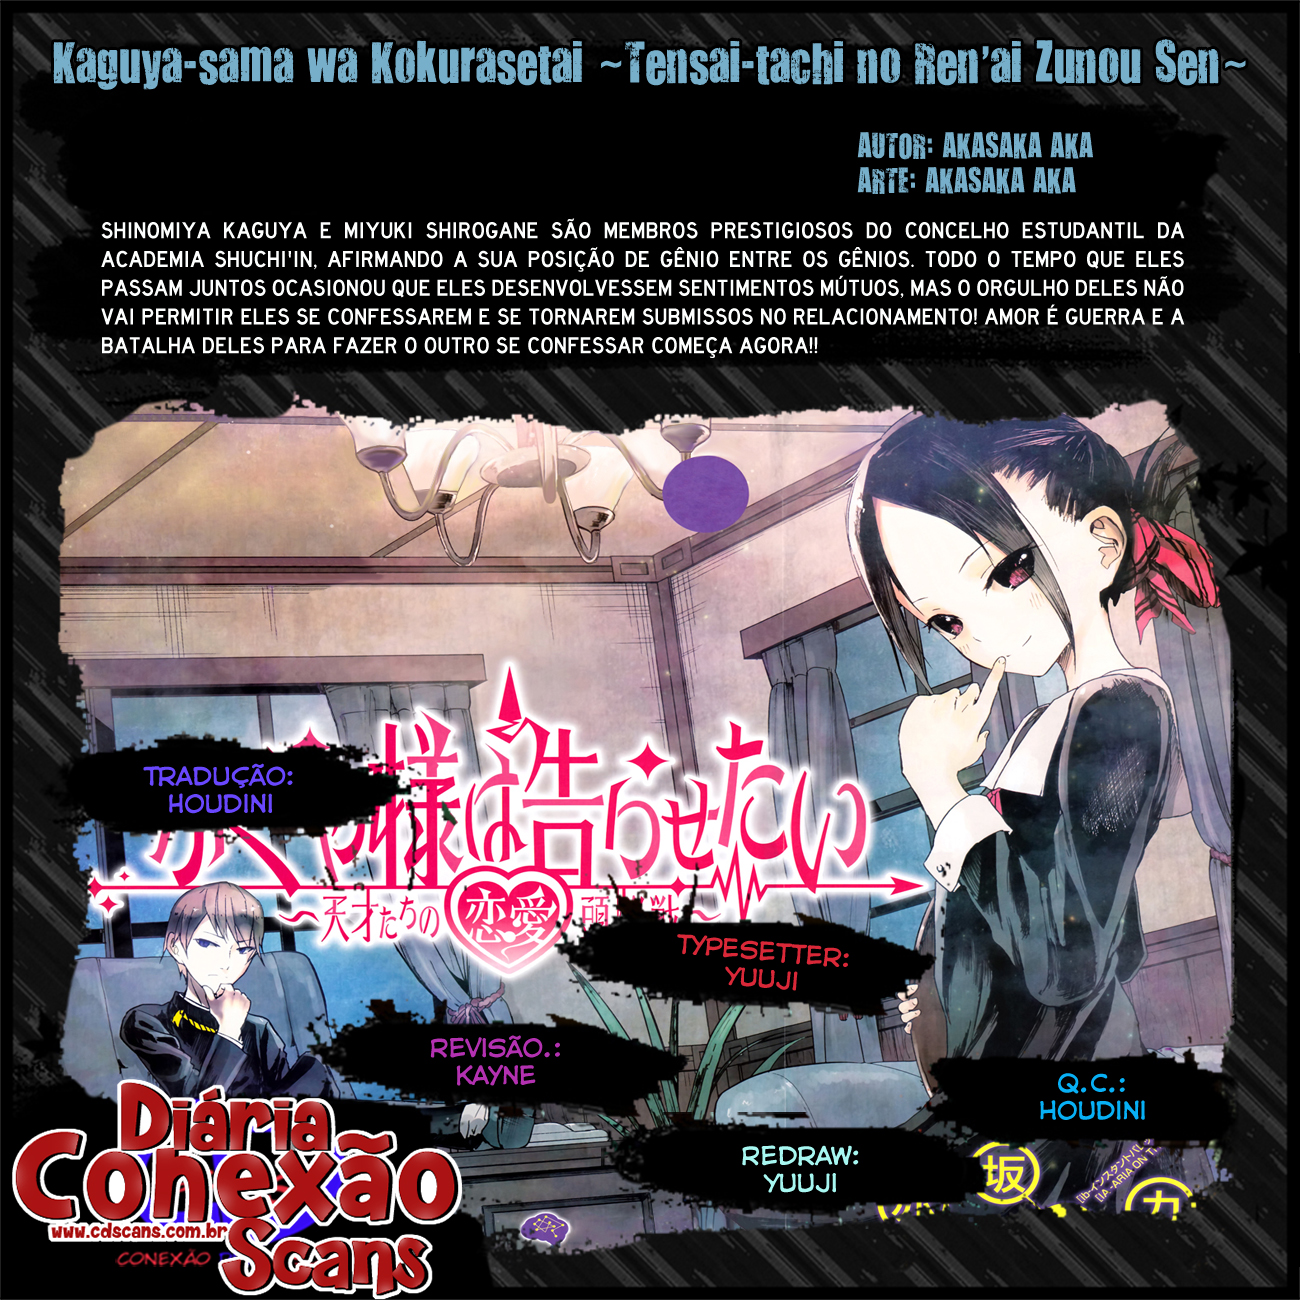 Crunchyroll Kaguya-sama wa Kokurasetai: Tensai-tachi no Renai Zunousen  Anticipation - AnimeSuki Forum